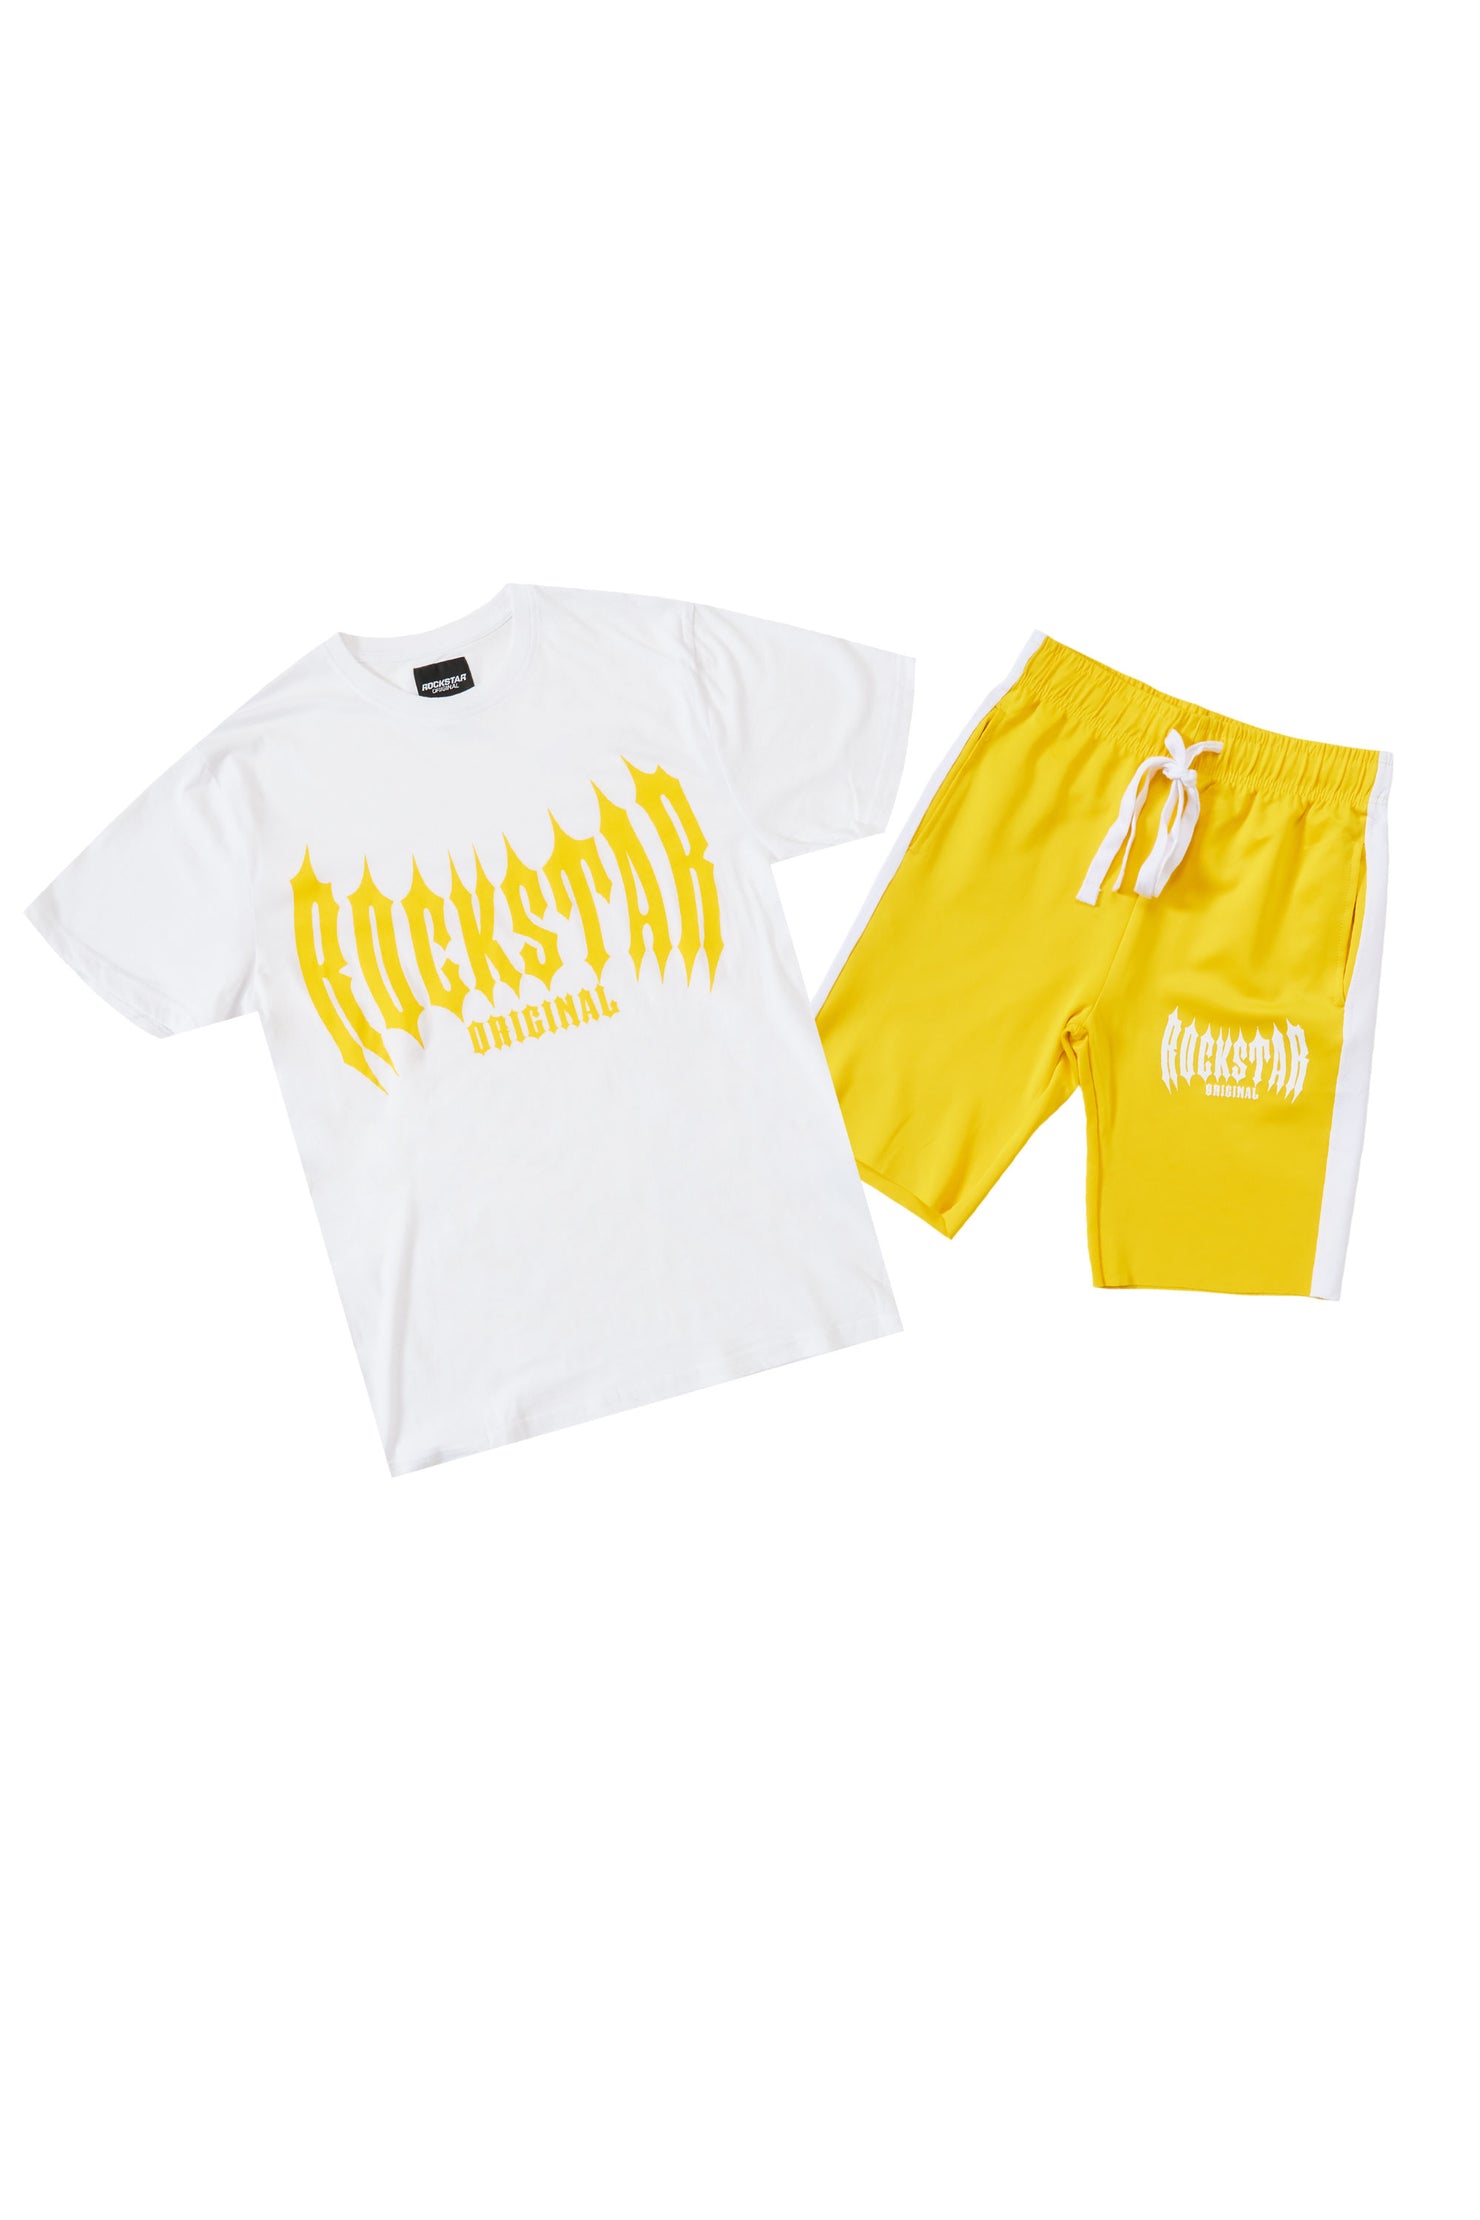 Skeller White/Yellow T-Shirt Short Set